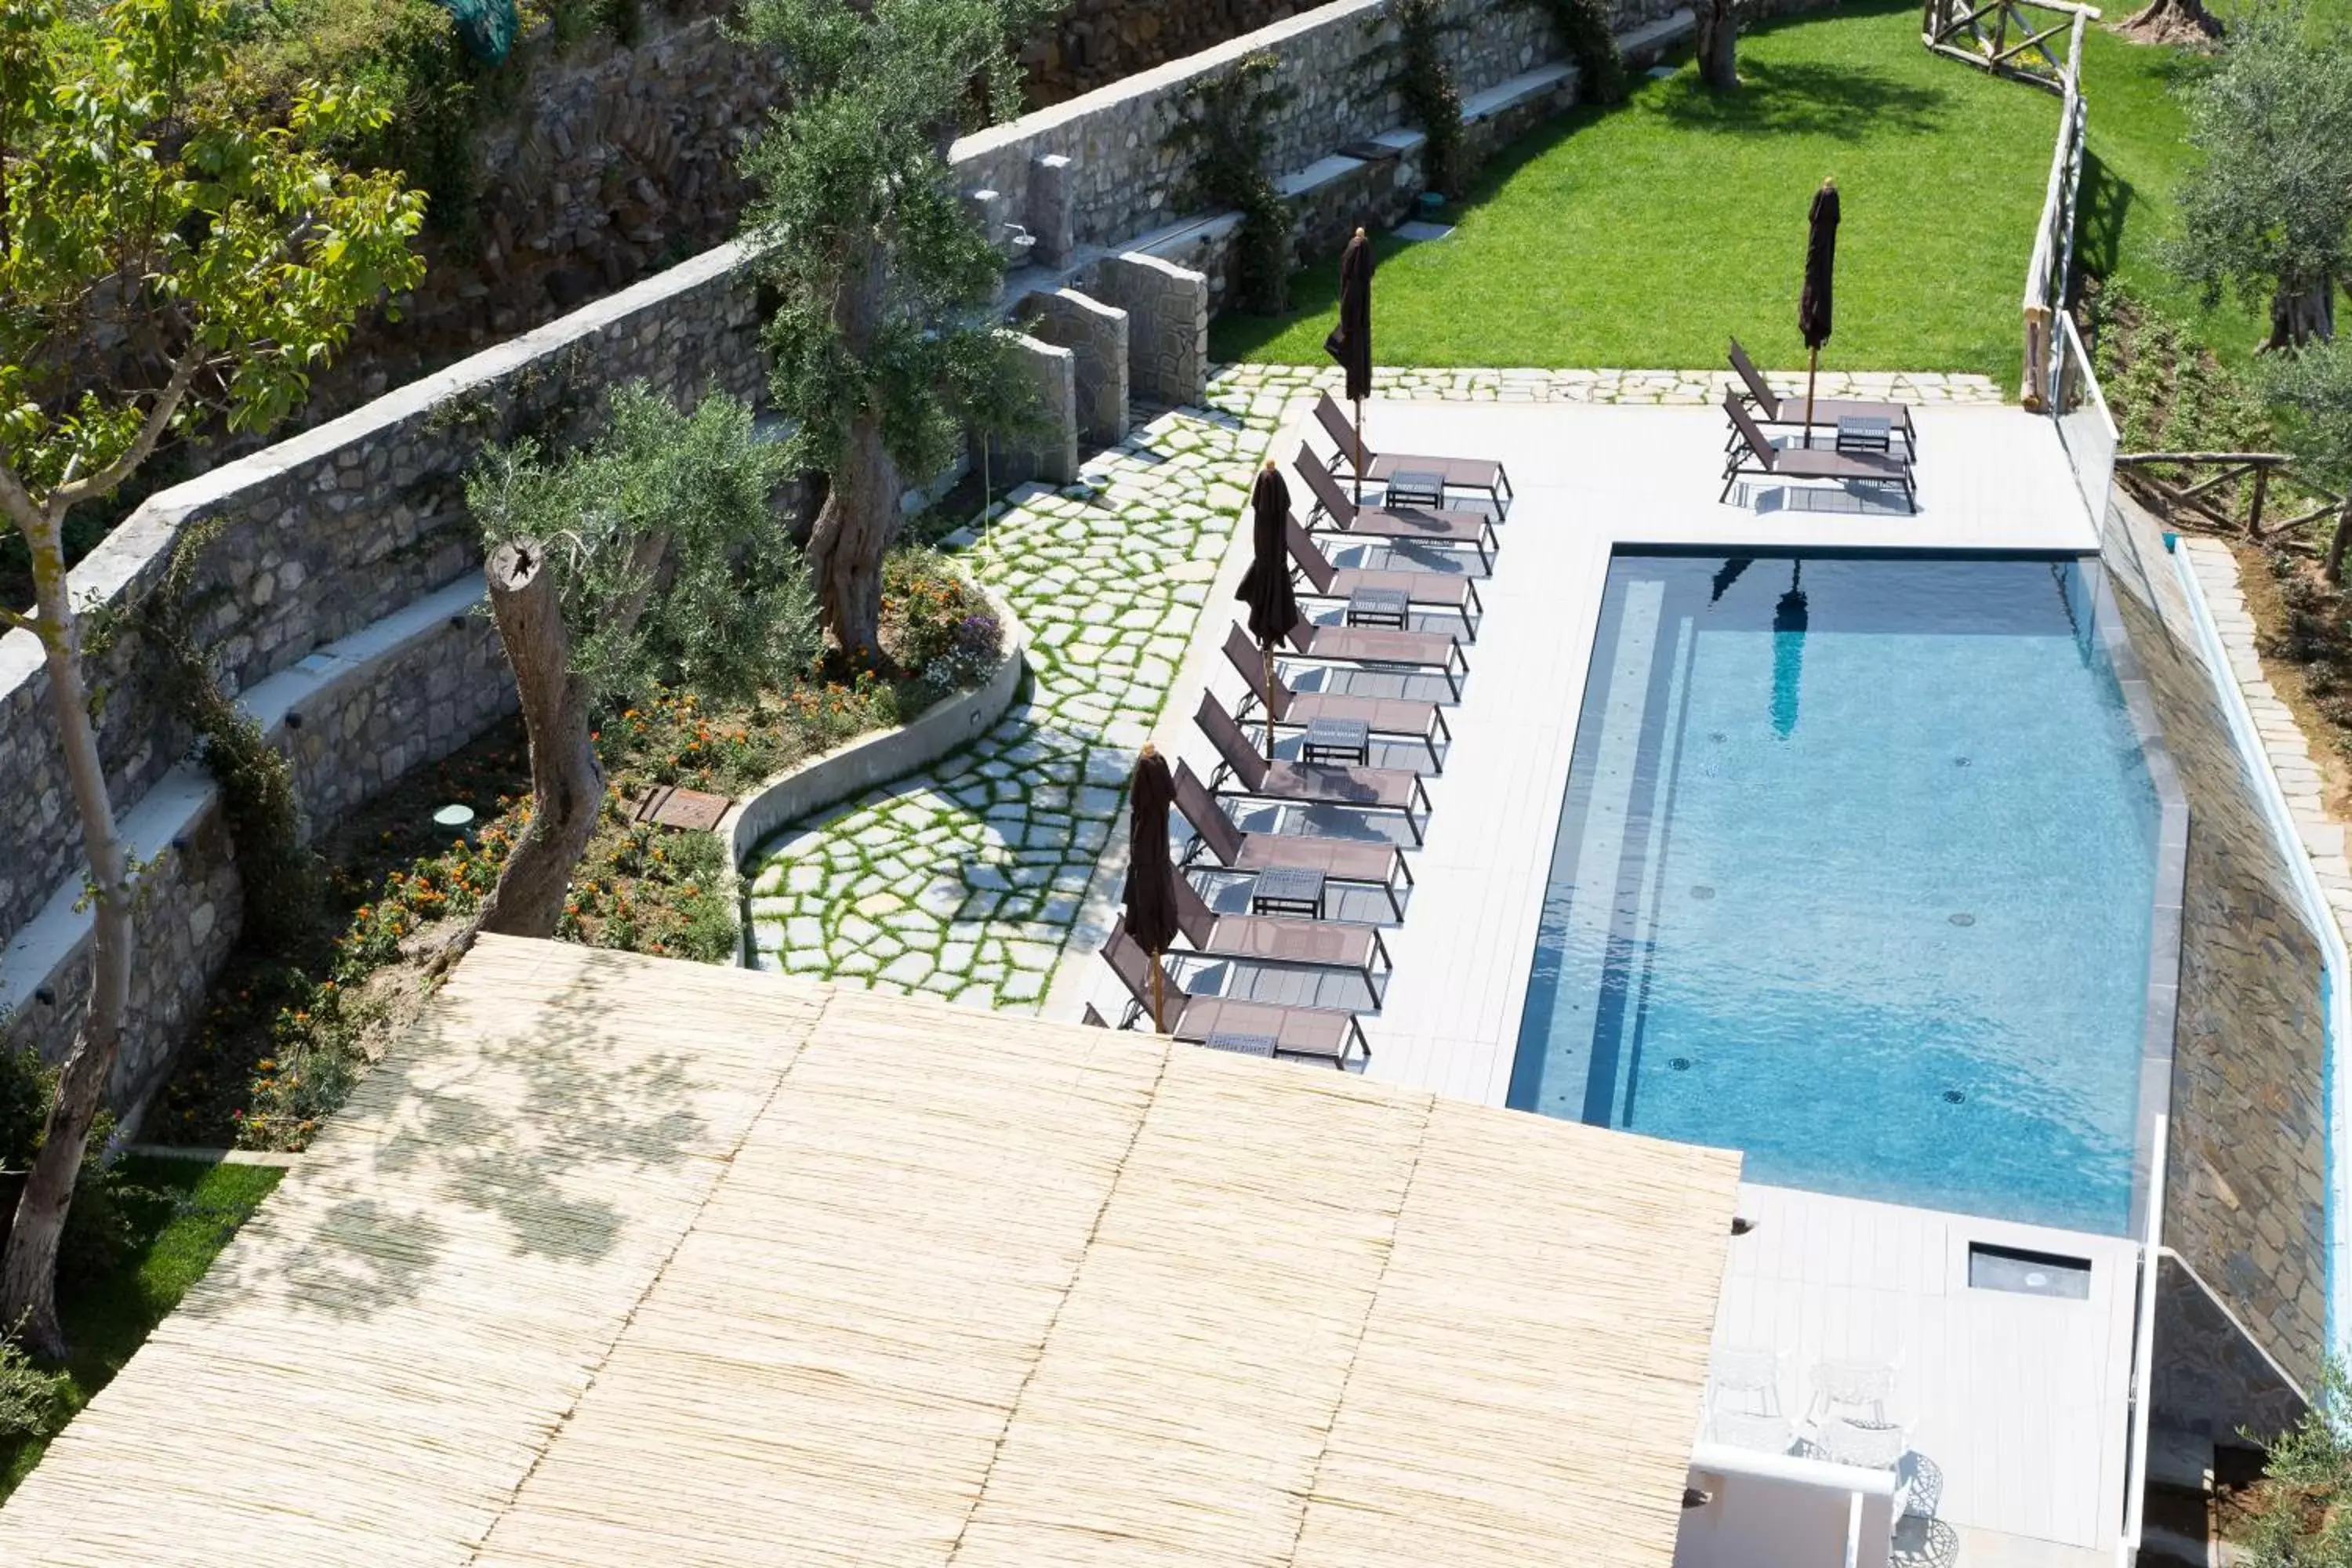 Day, Pool View in Villa Fiorella Art Hotel